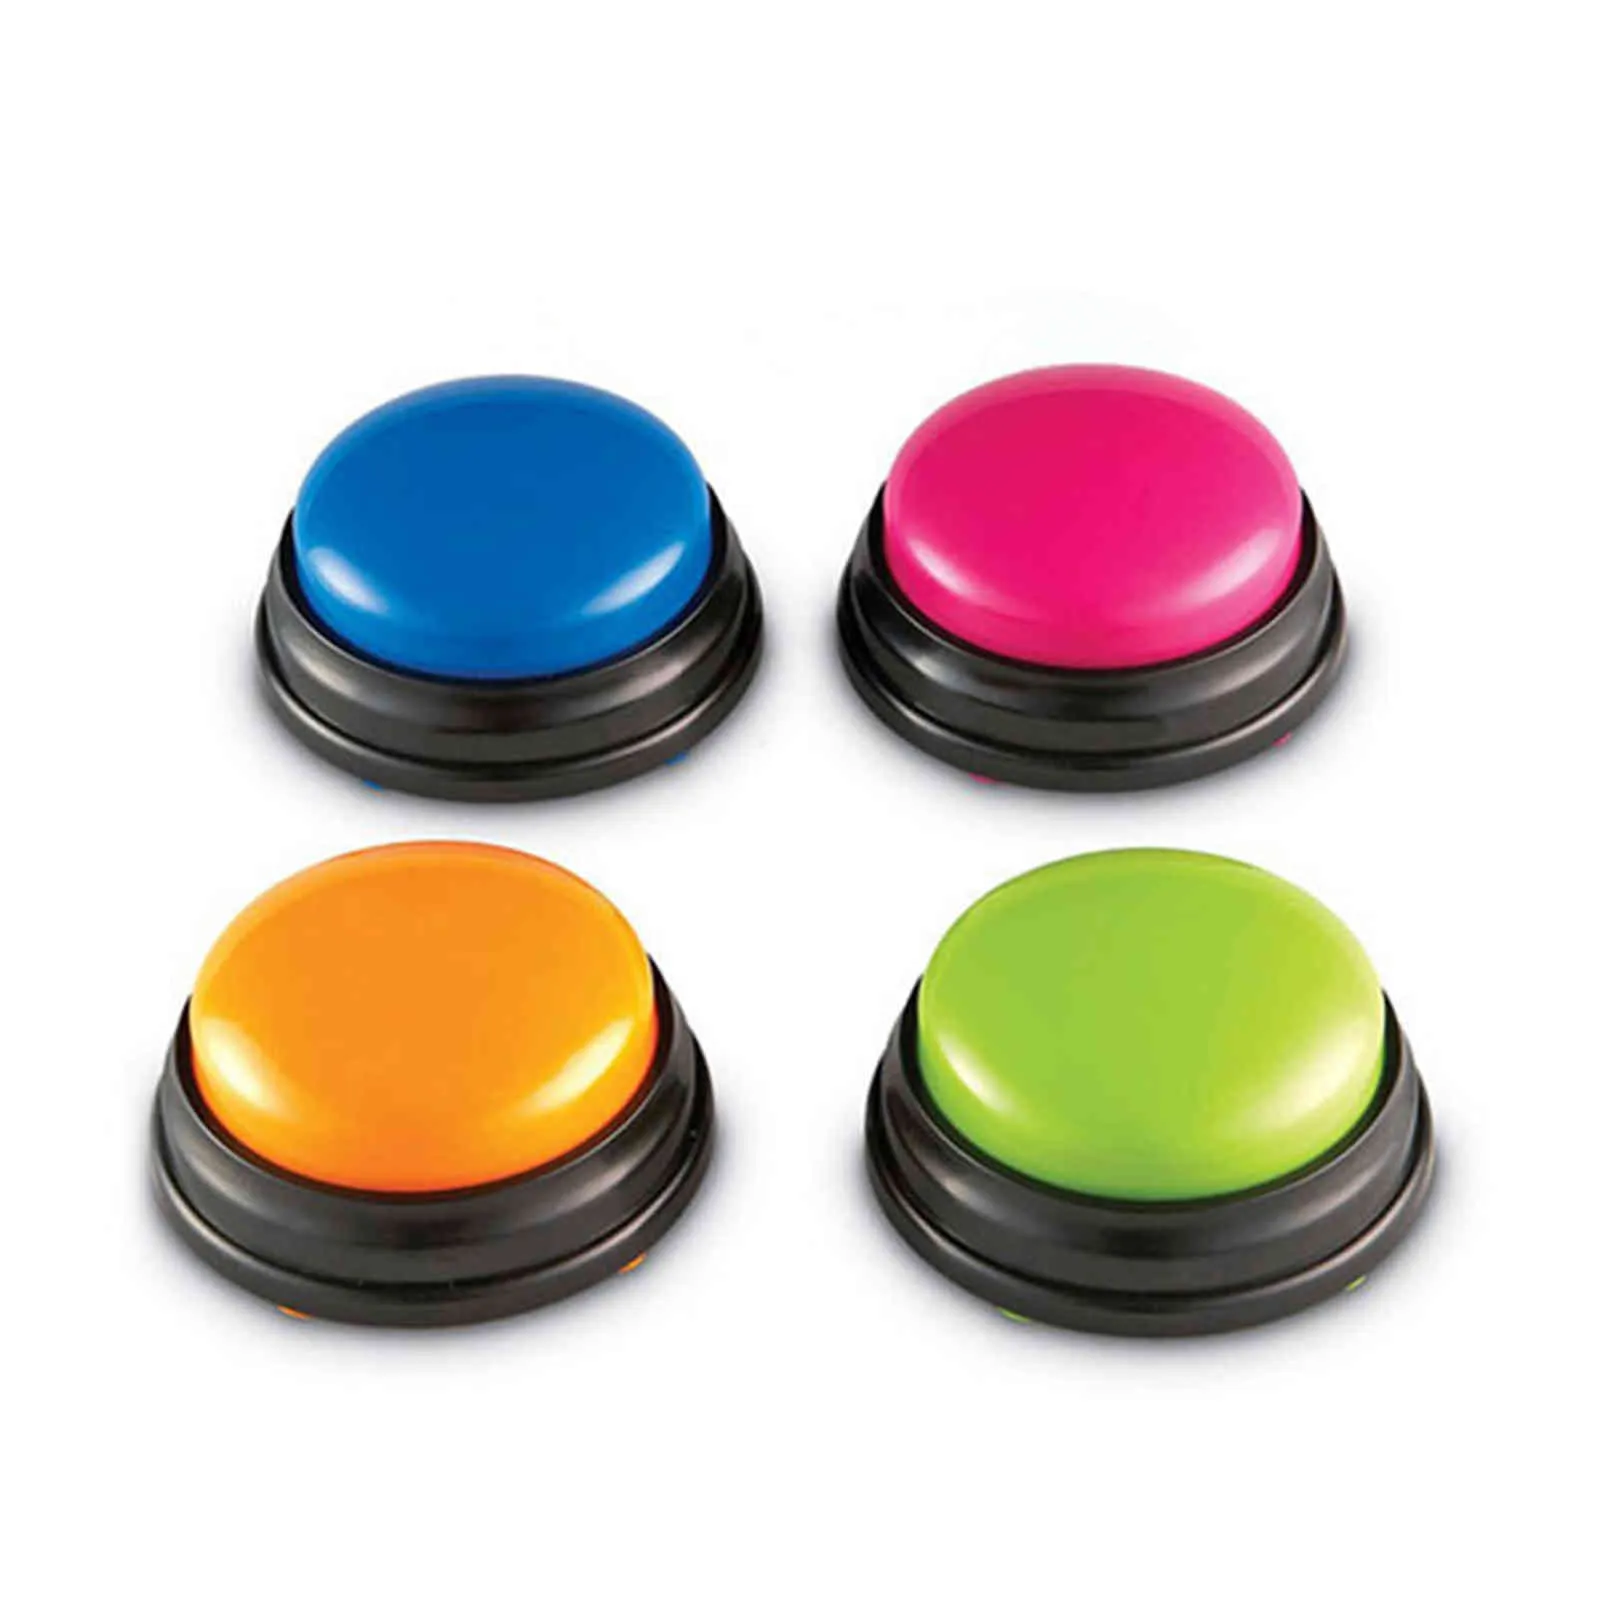 Bouton d'enregistrement sonore de petite taille, voix facile à transporter pour enfants, jouet interactif, boutons de réponse, Orange rose bleu vert, fabricant de bruit 3164